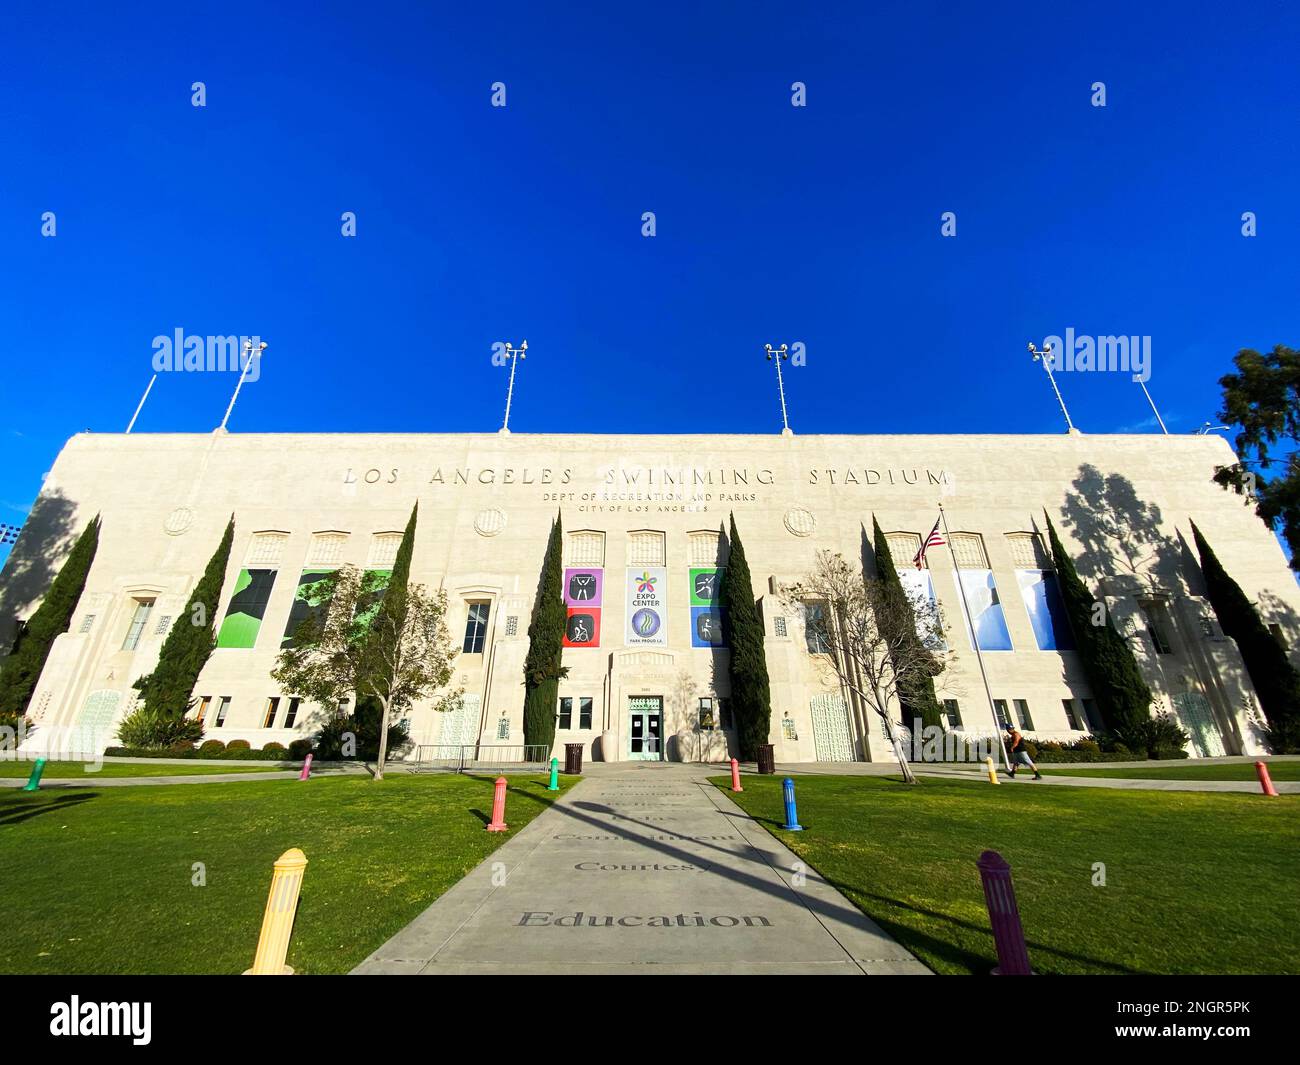 Le stade de natation de Los Angeles, LA84 Foundation/John C. Argue Swim Stadium Banque D'Images